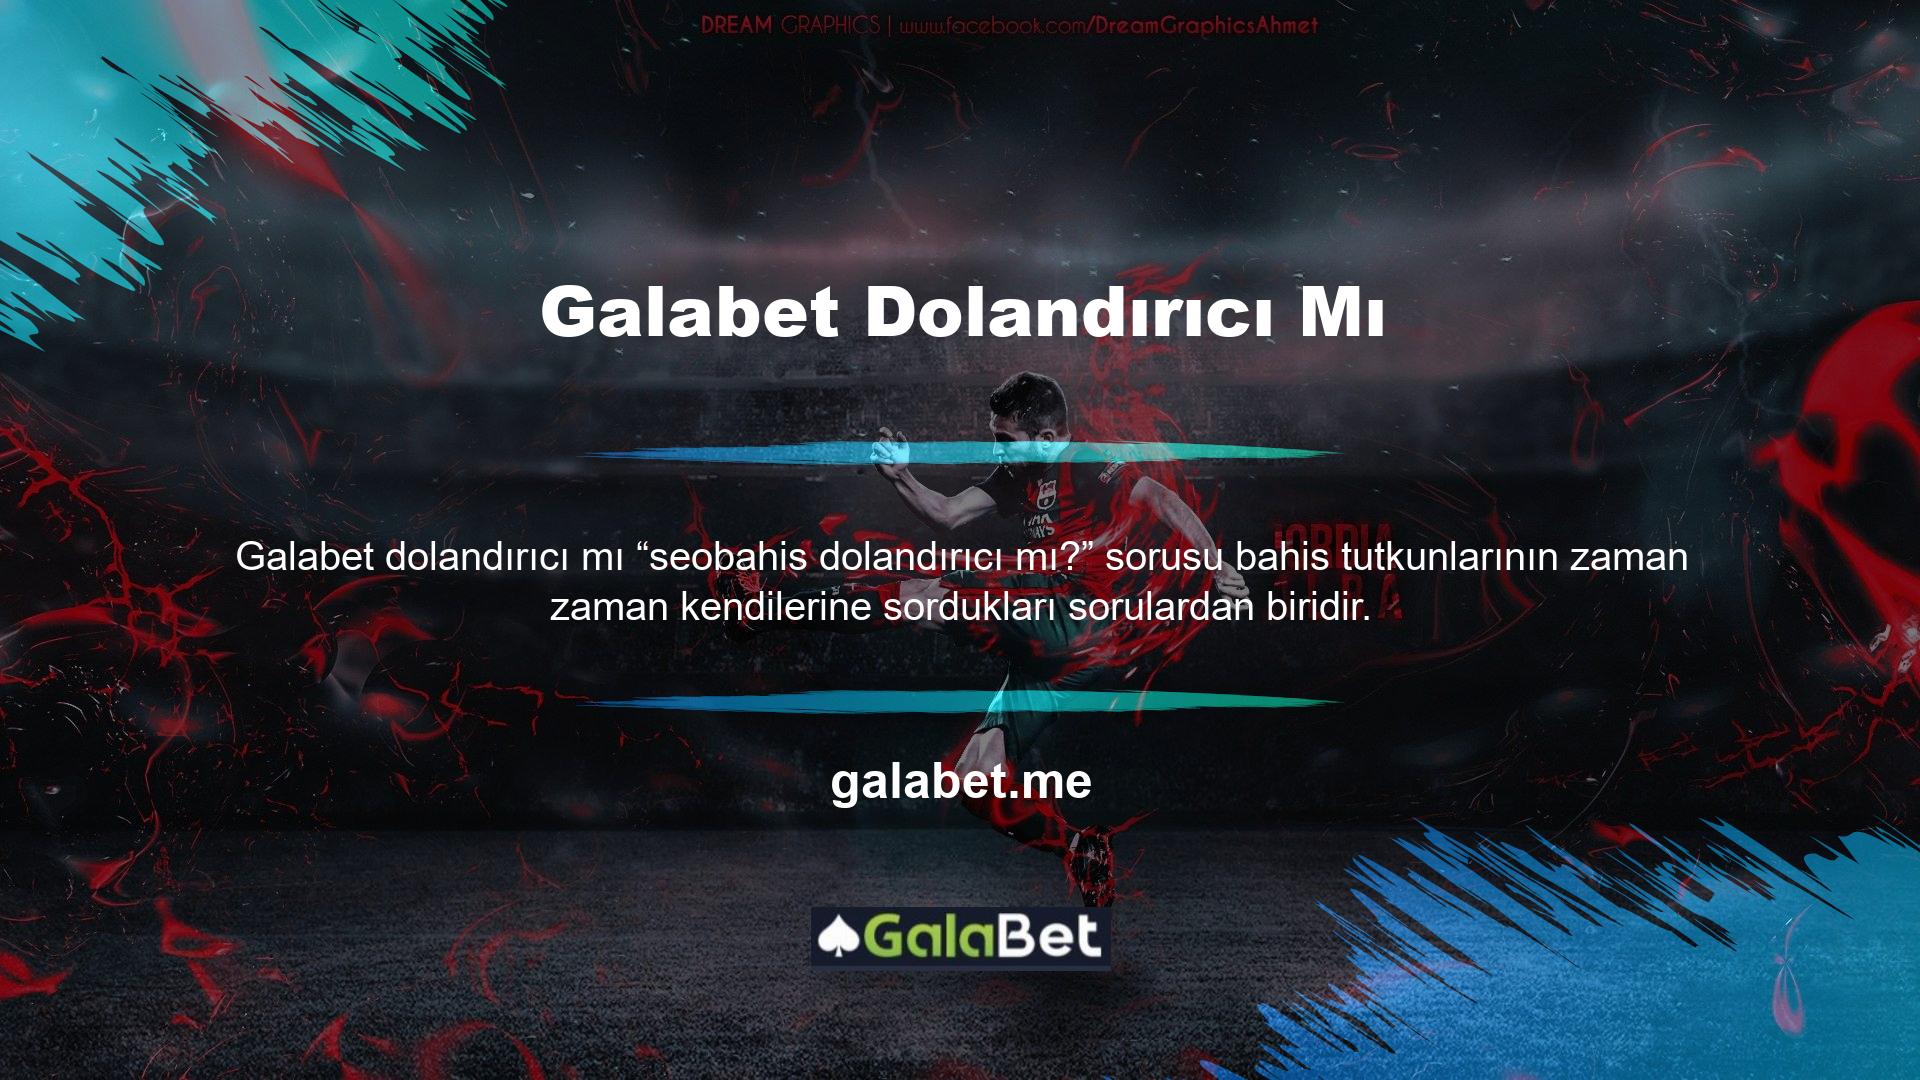 Galabet bahis sitesi, canlı bahis ve canlı casino hizmetleri sunan çevrimiçi bahis sitelerinden biridir